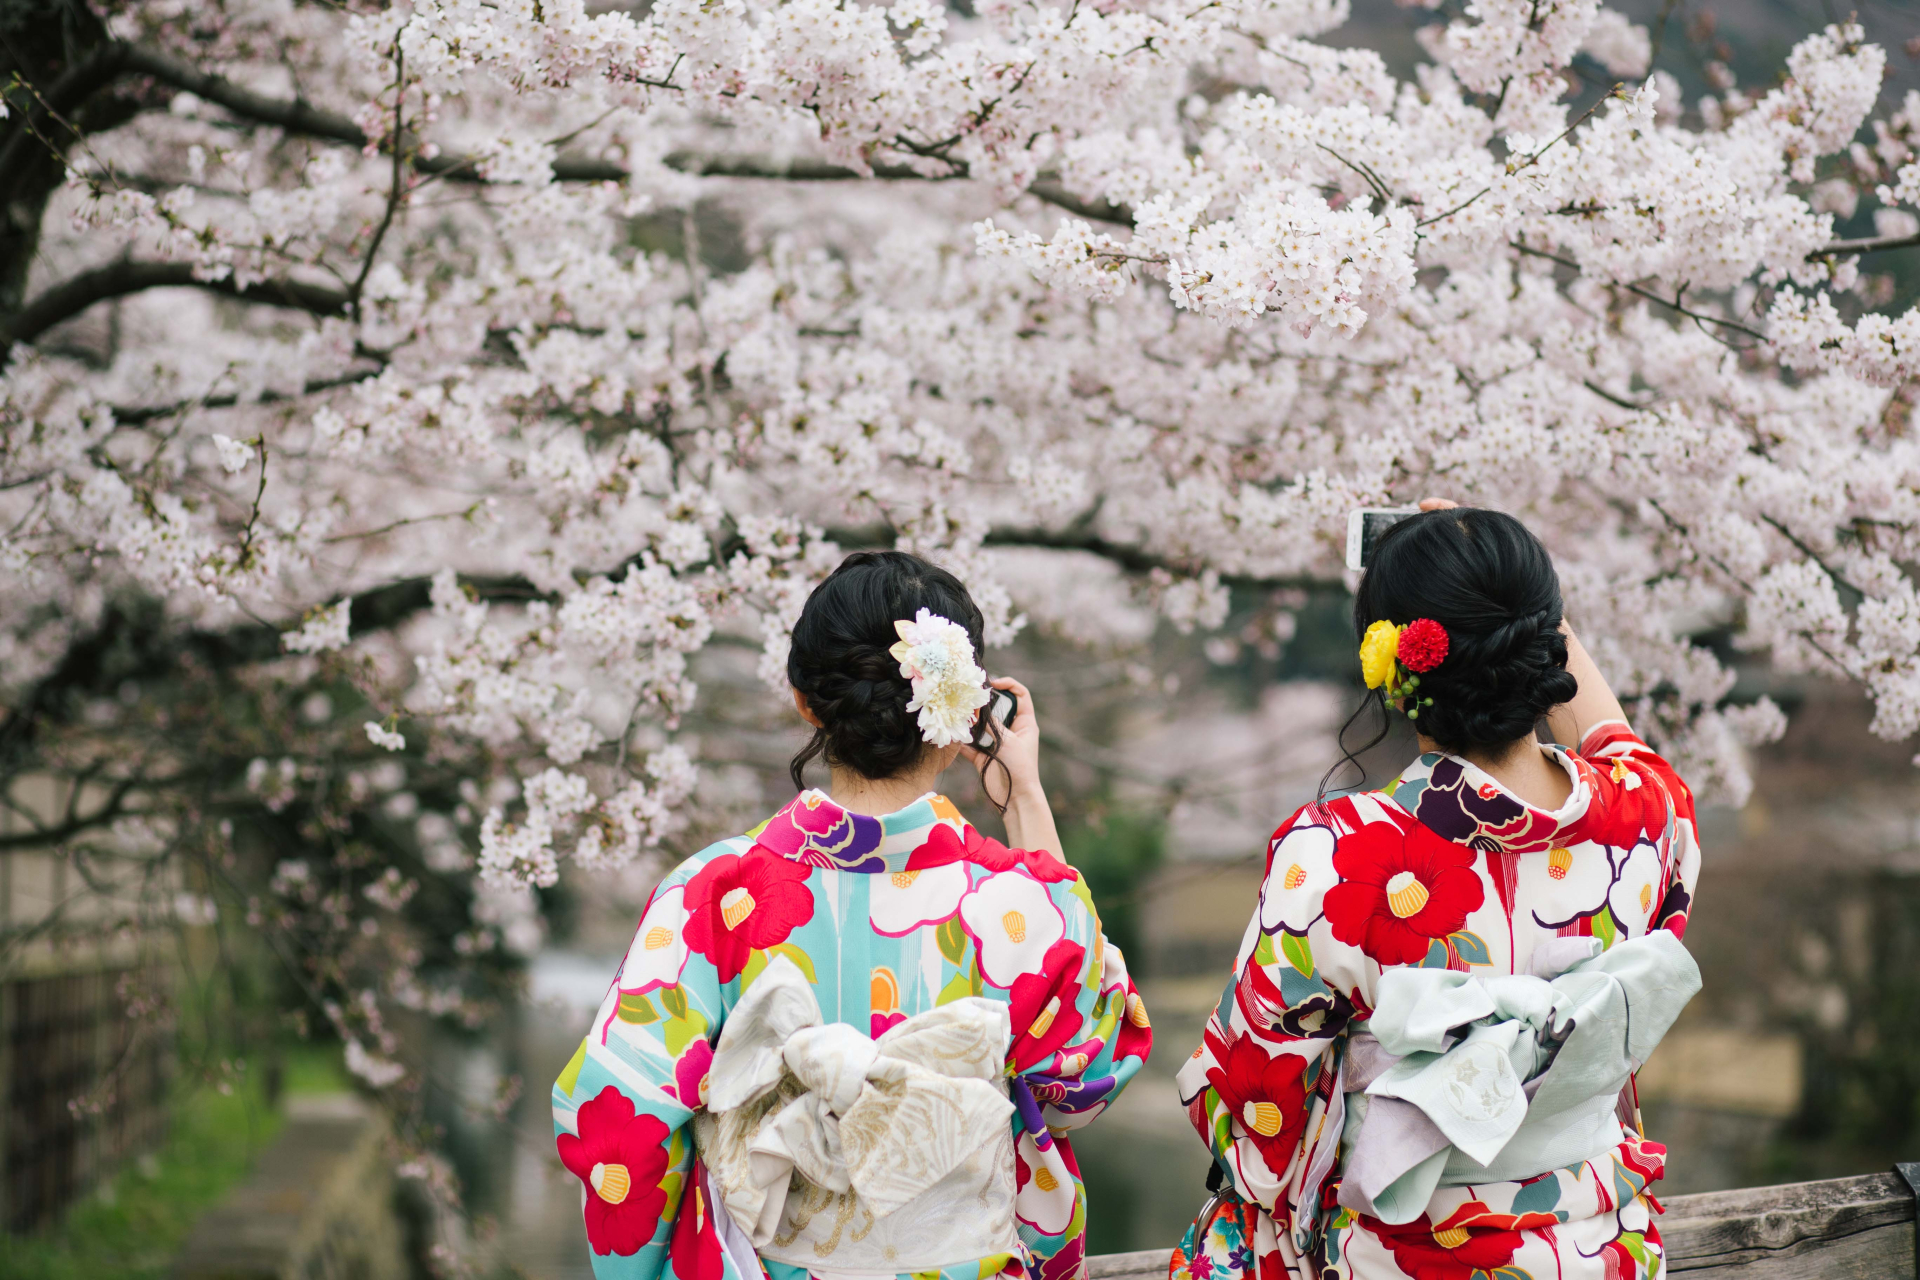 Khoảng gần 50.000 khách du lịch Việt Nam đến Nhật ngắm hoa anh đào - ảnh 1